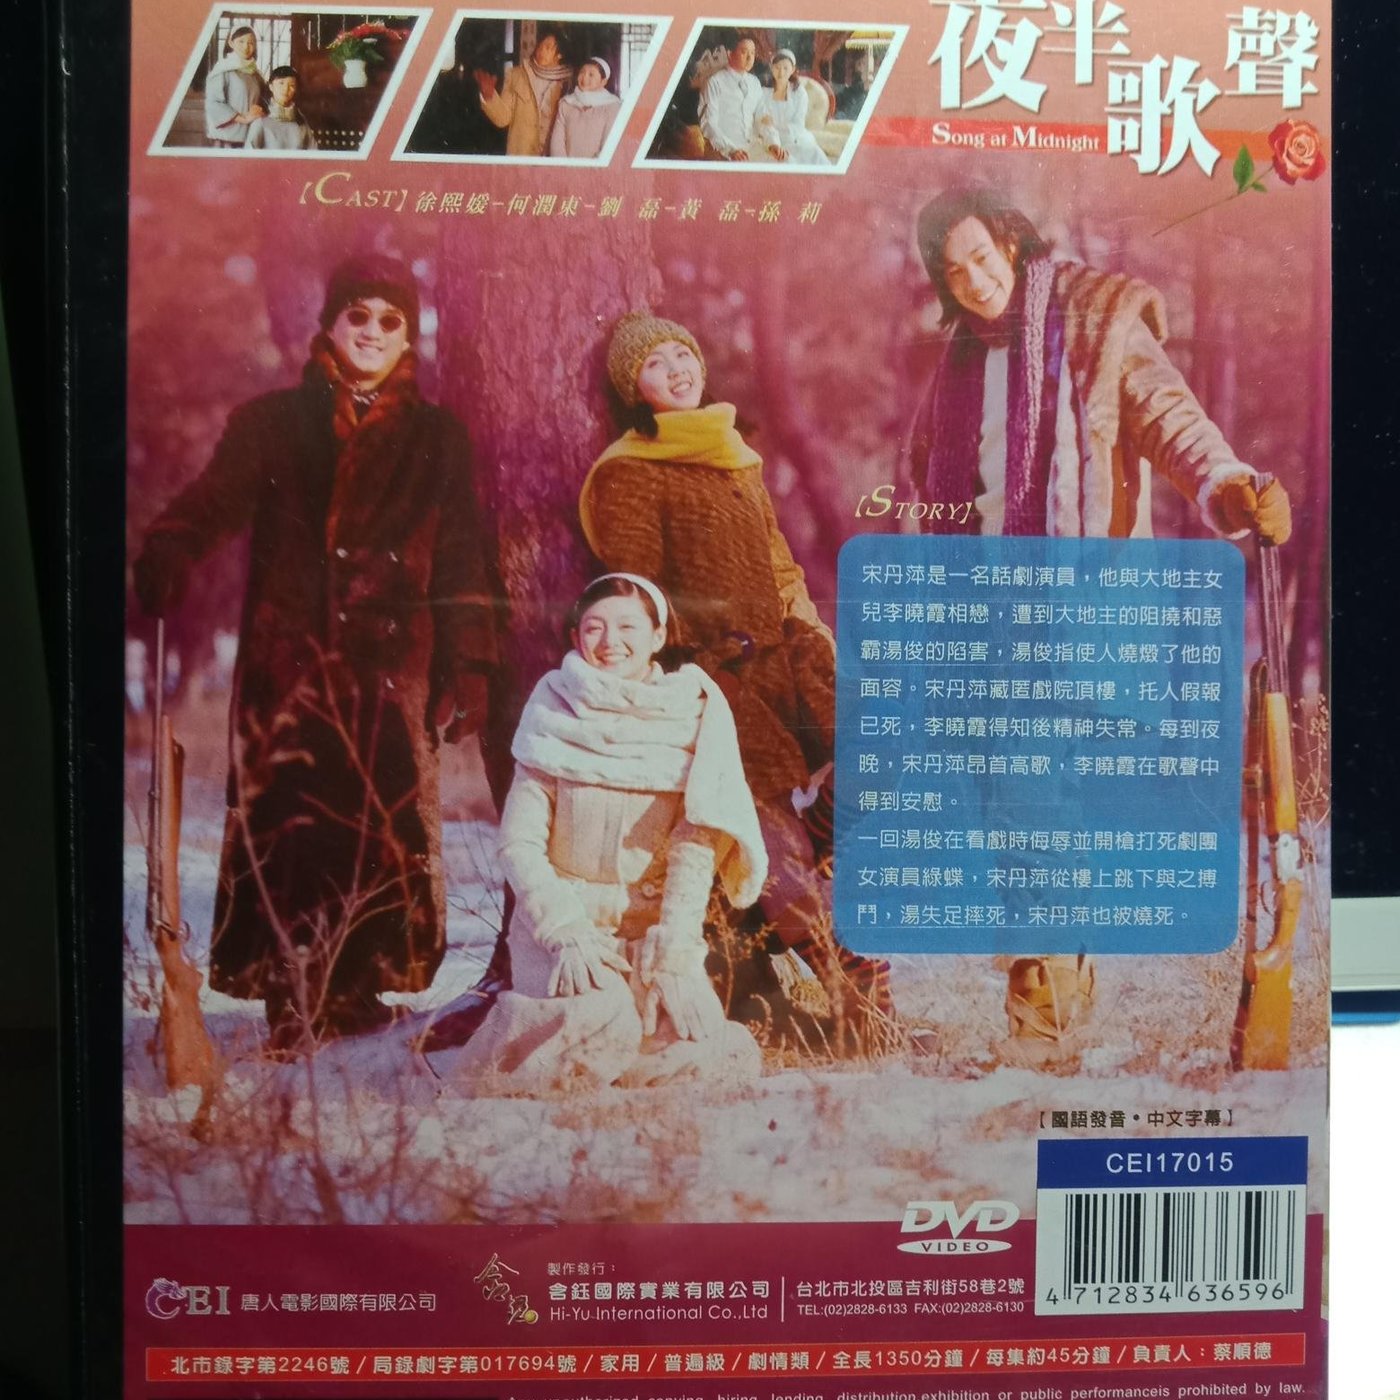 激レア ガールフレンド DVD 日本語字幕付 クローディア・ウェイル監督